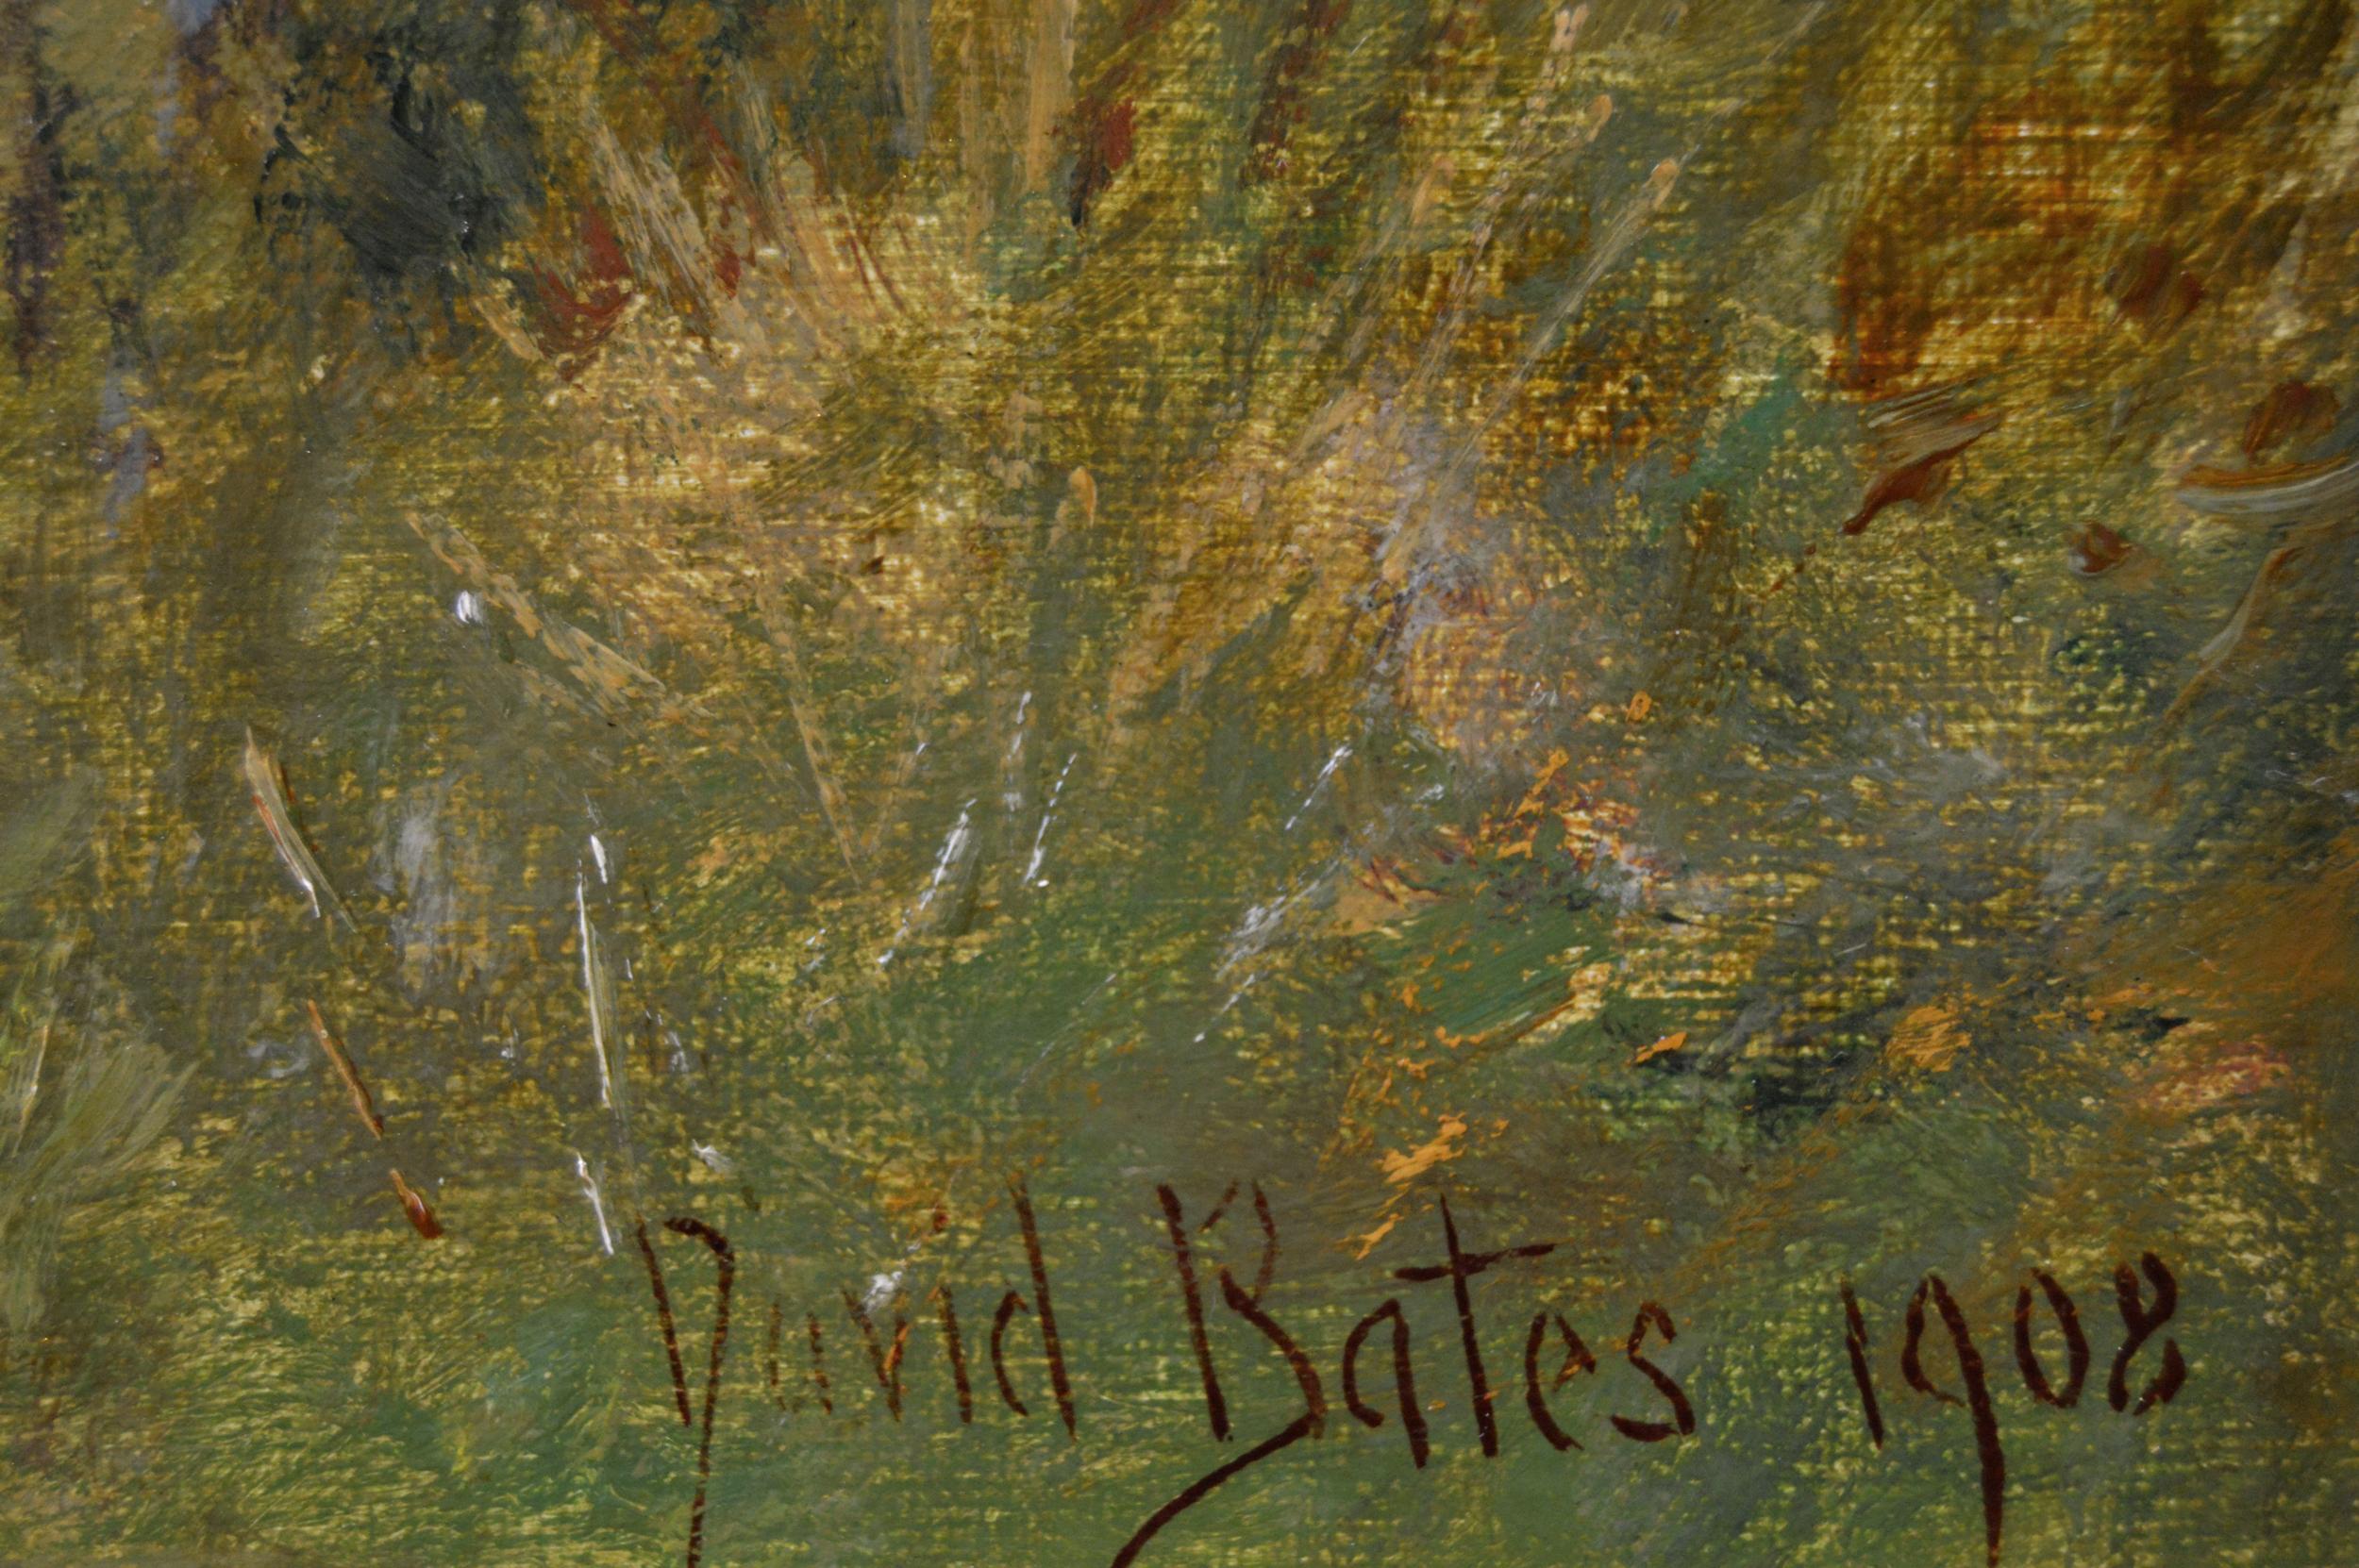 David Bates 
Britannique, (1840-1921)
L'équipe de la charrue, Bredon's Norton
Huile sur toile, signée et datée 1908, inscription au verso
Taille de l'image : 15.5 pouces x 23.5 pouces 
Dimensions, y compris le cadre : 21,5 pouces x 29,5 pouces

Une